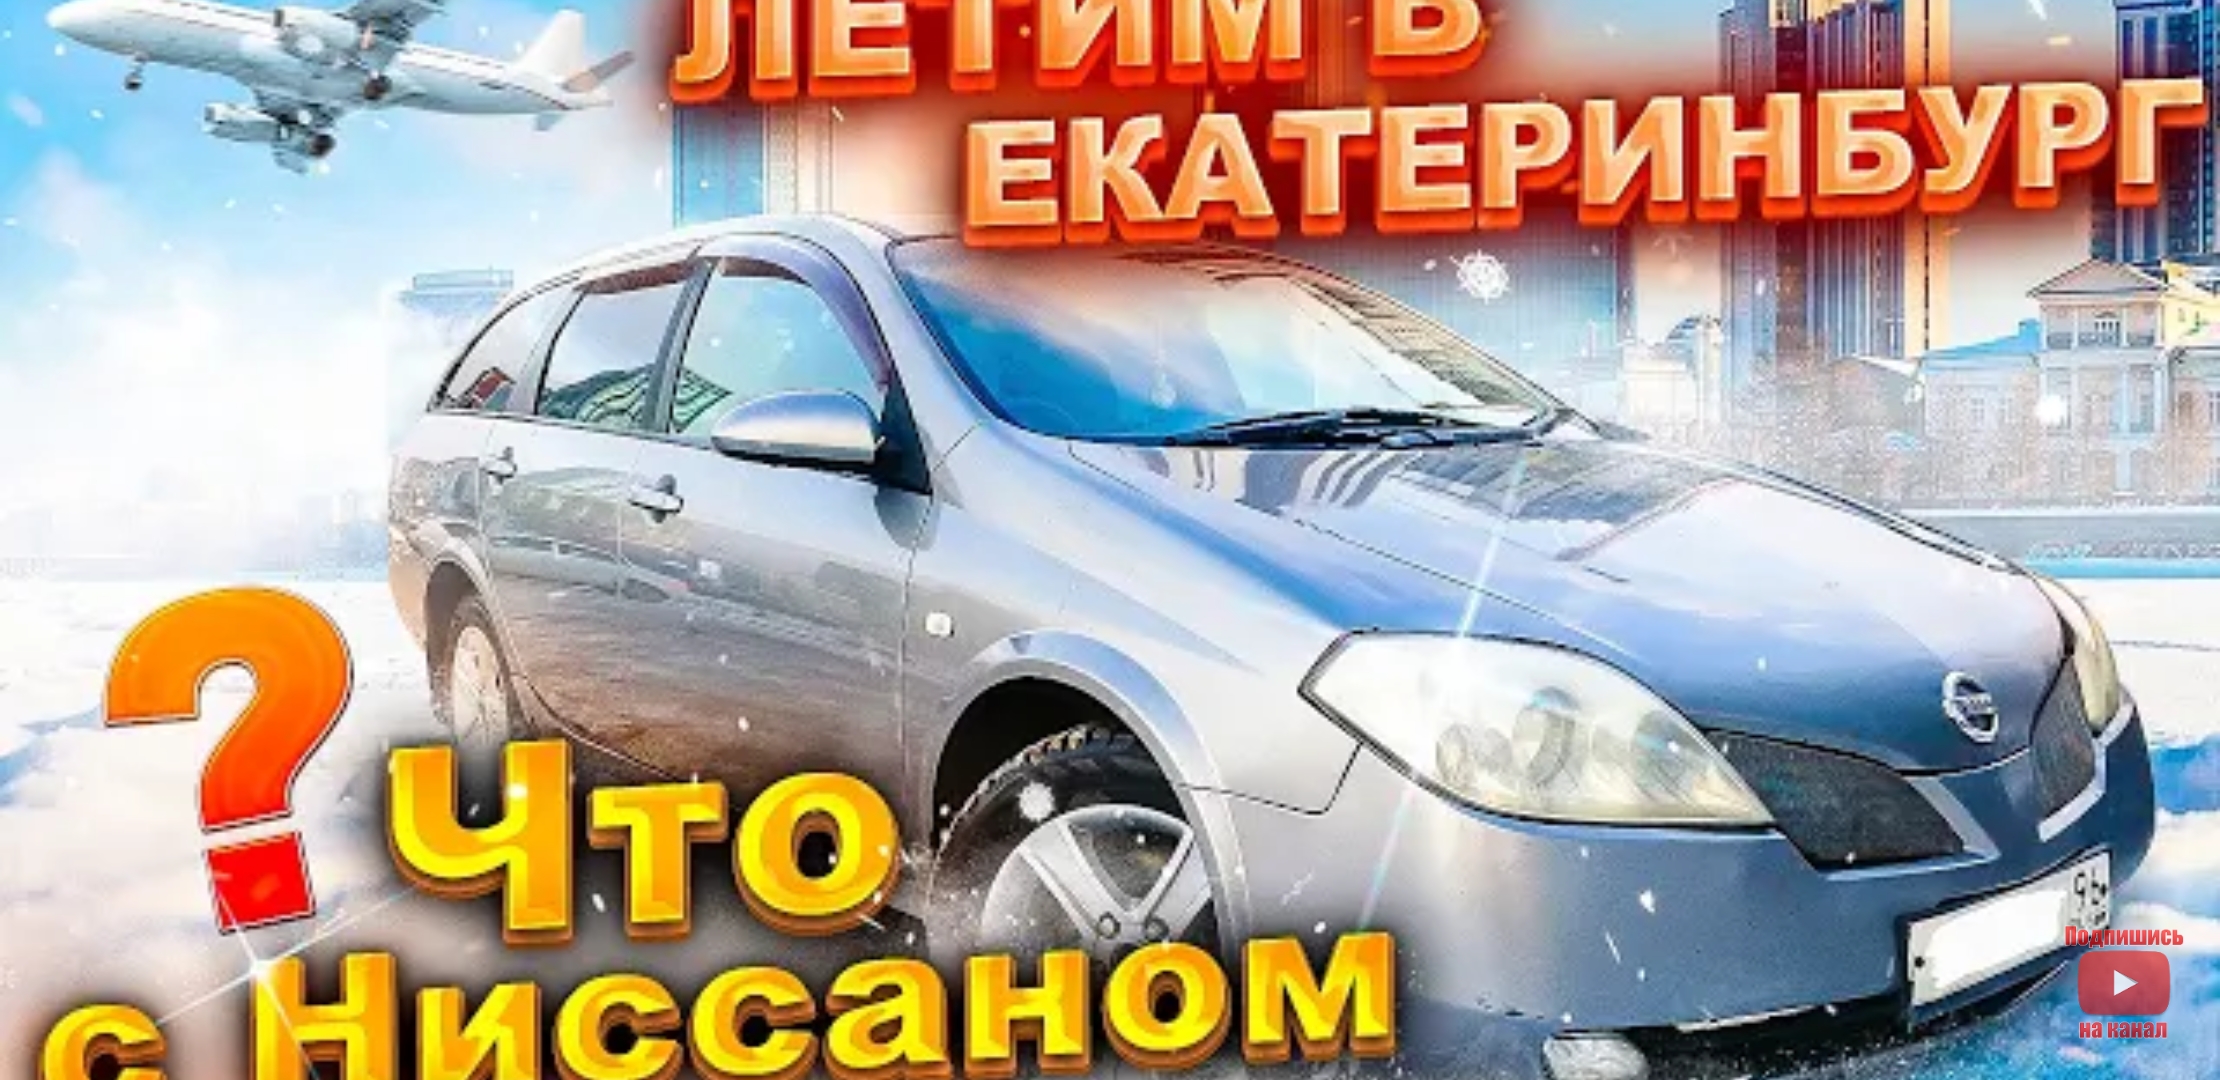 Анонс видео-теста Летим в Екатеринбург. Что с Ниссаном ? Перекуп авто